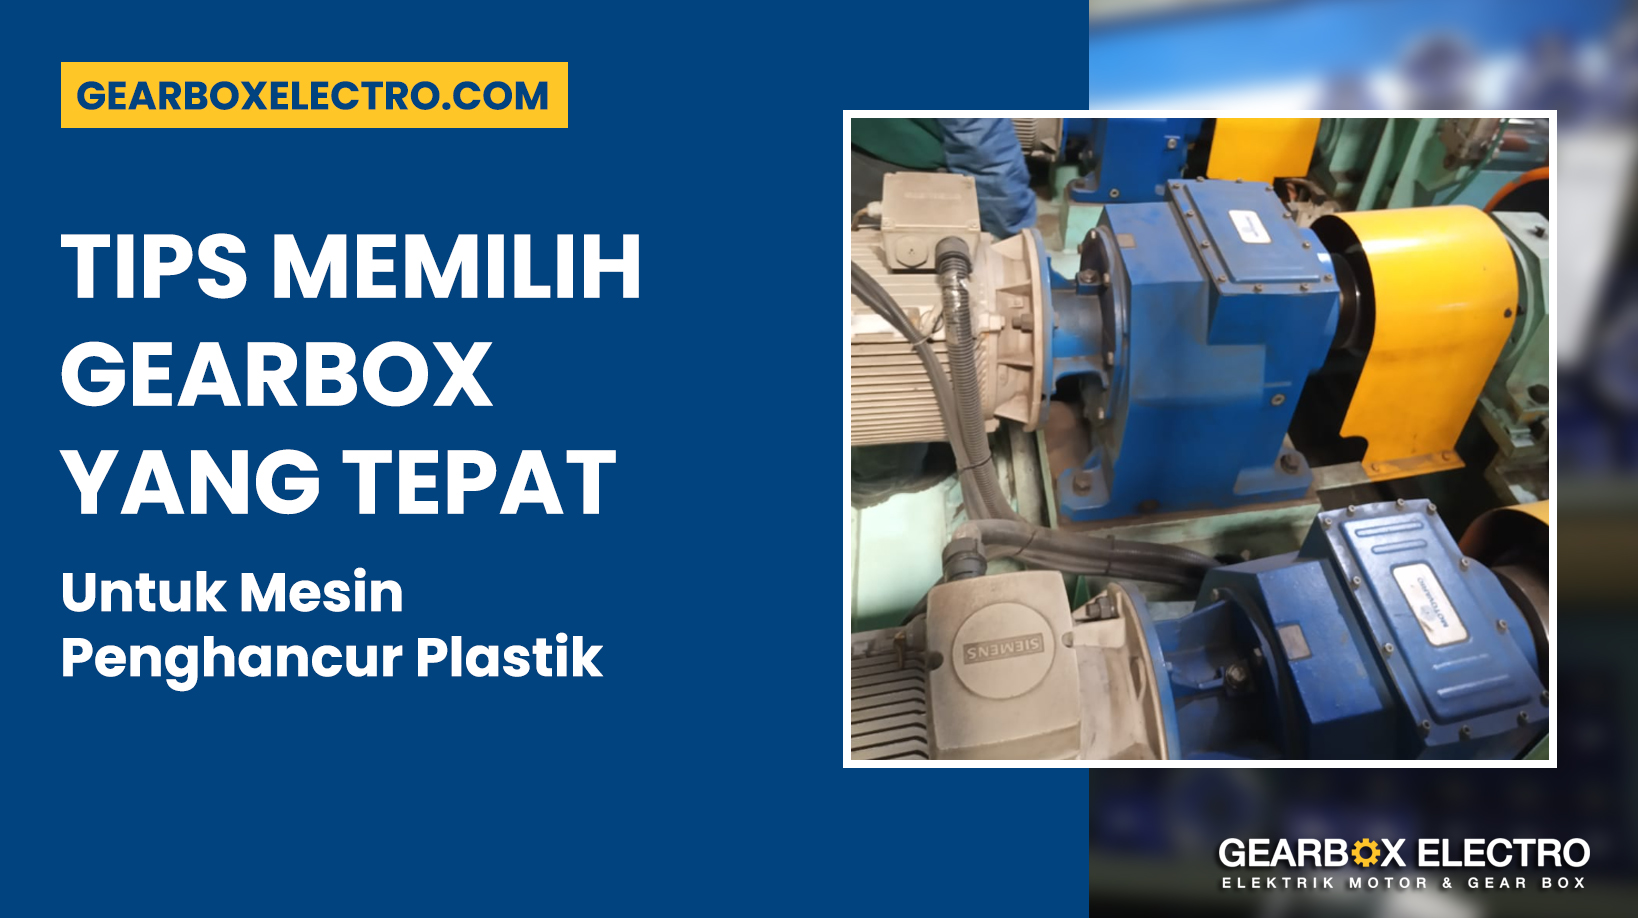 Tips Memilih Gearbox yang Tepat untuk Mesin Penghancur Plastik